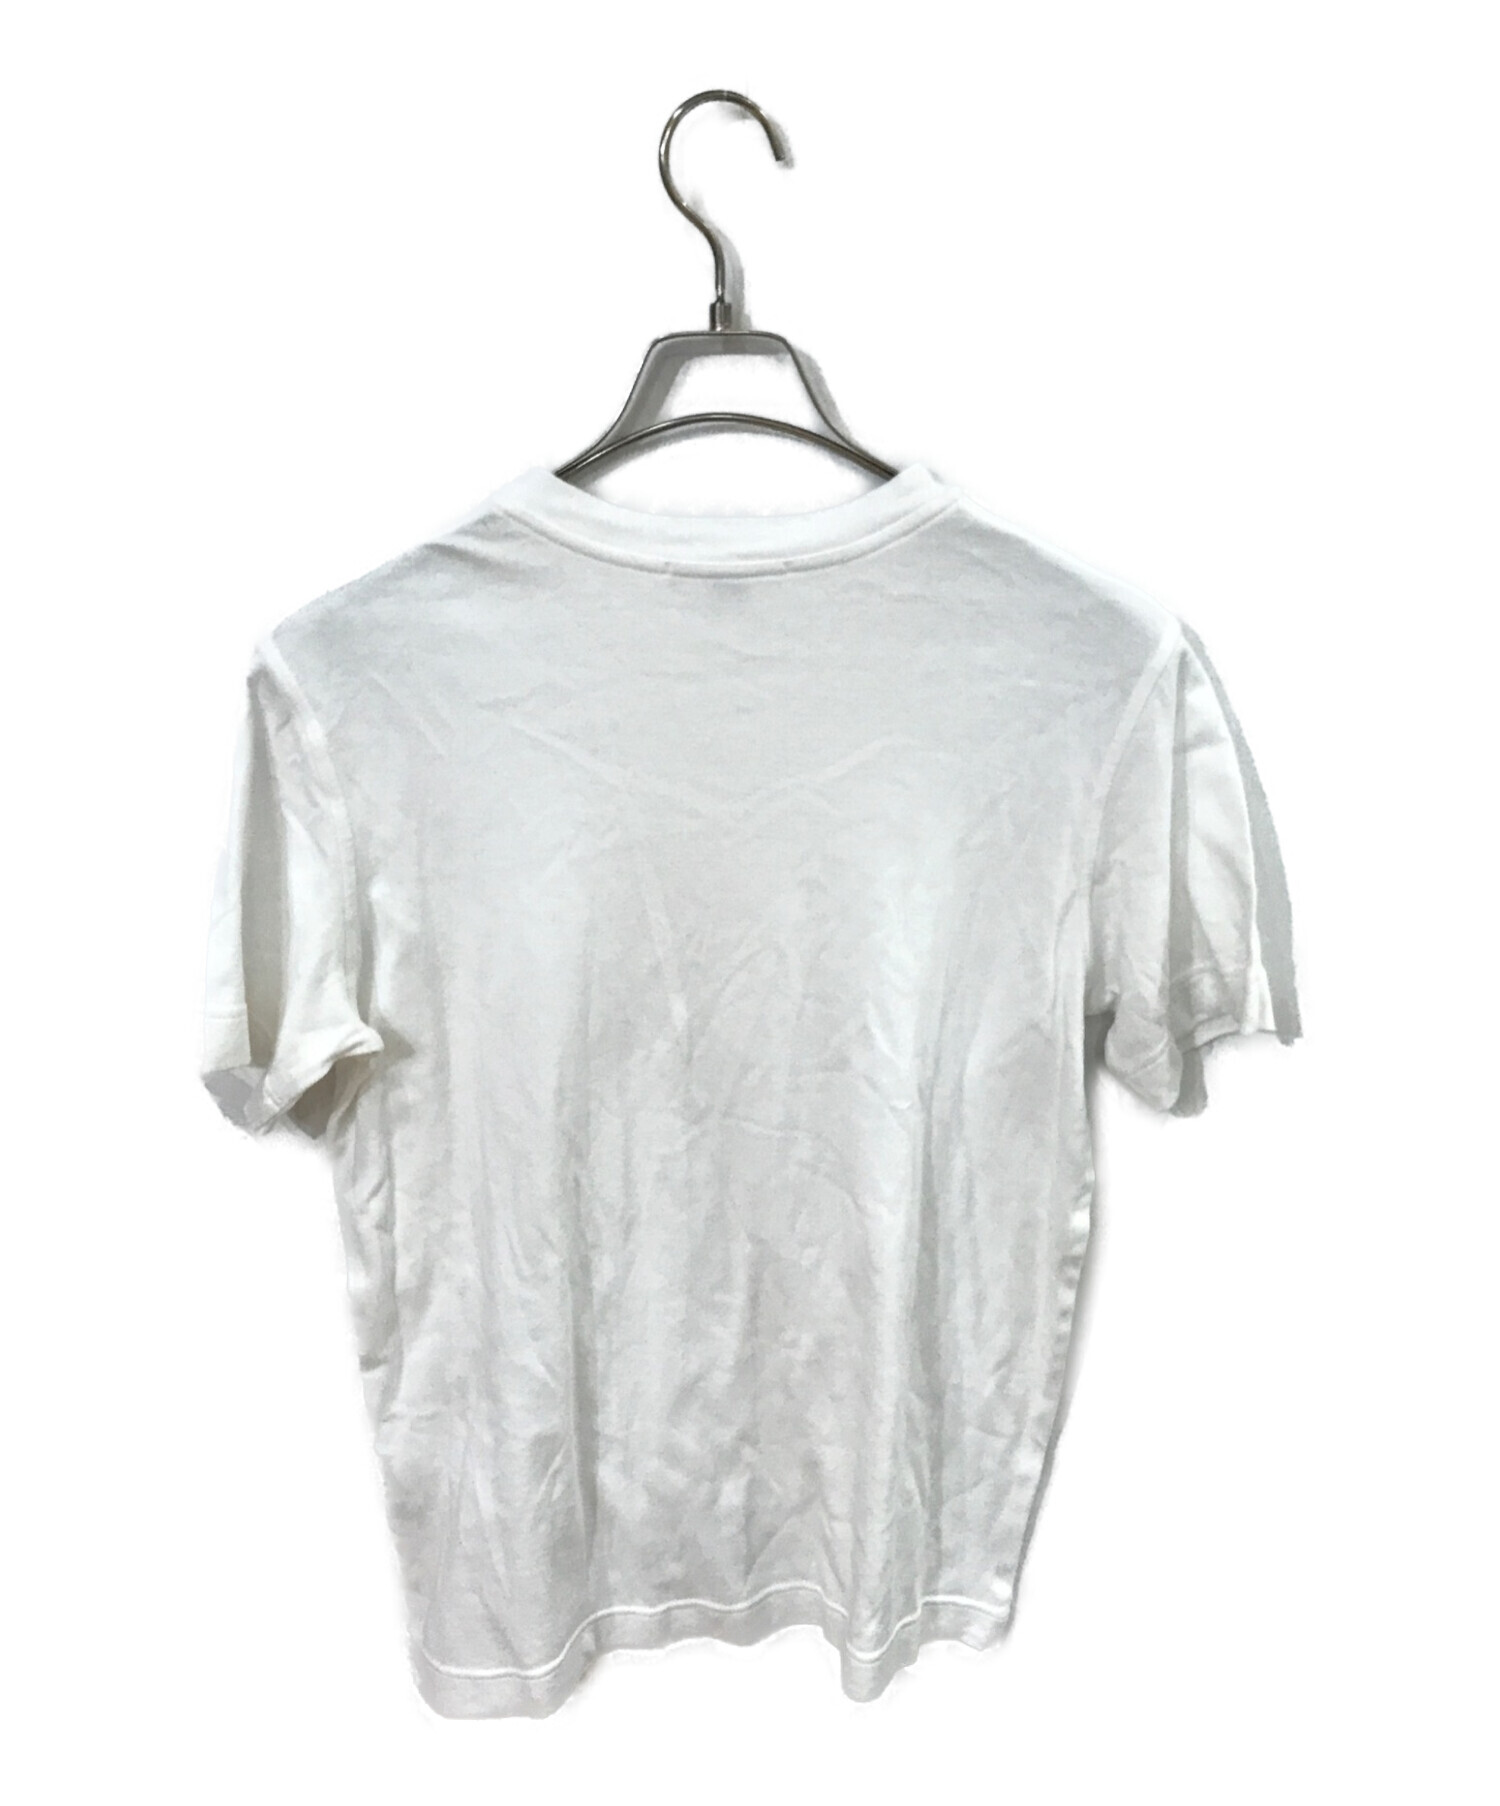 LOUIS VUITTON (ルイ ヴィトン) Tシャツ ホワイト サイズ:M